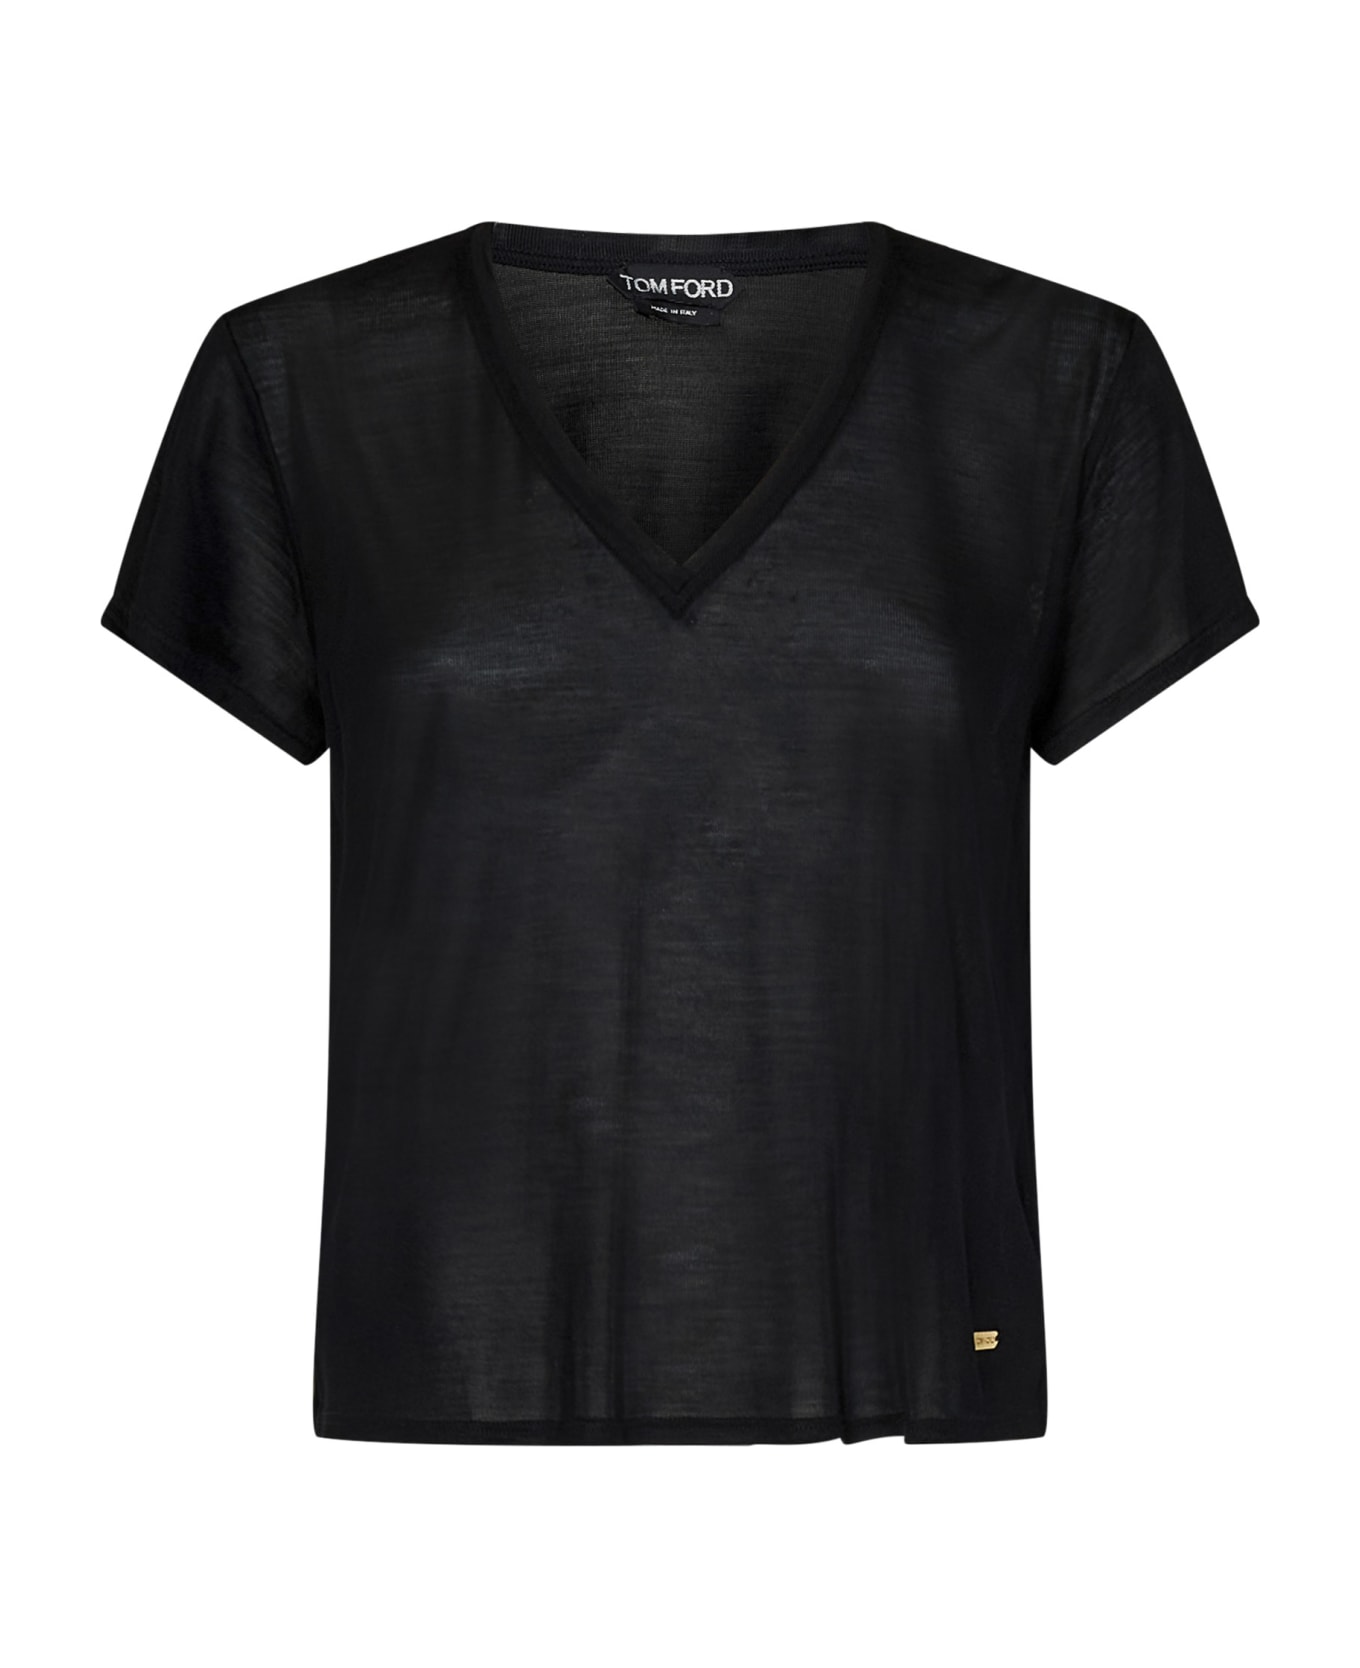 Tom Ford T-shirt - Black Tシャツ